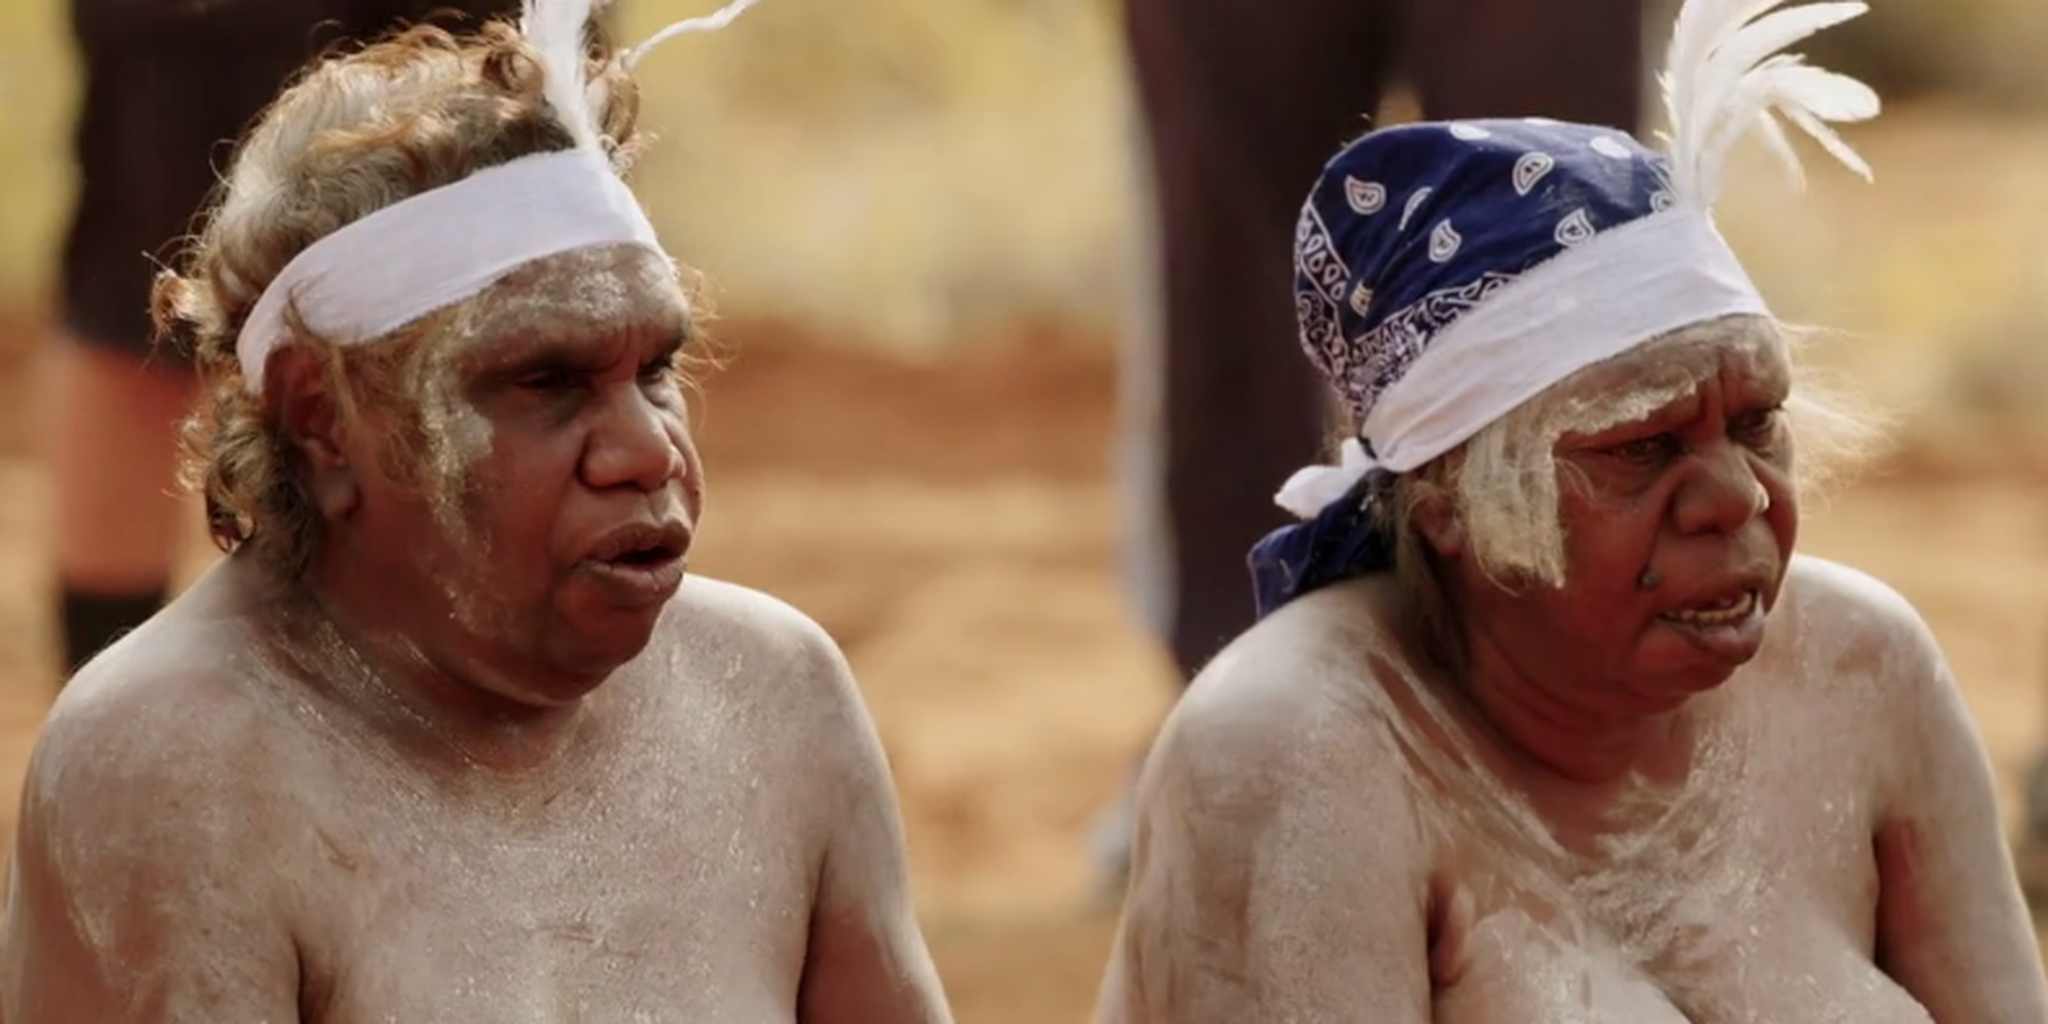 Aboriginal nude pictures